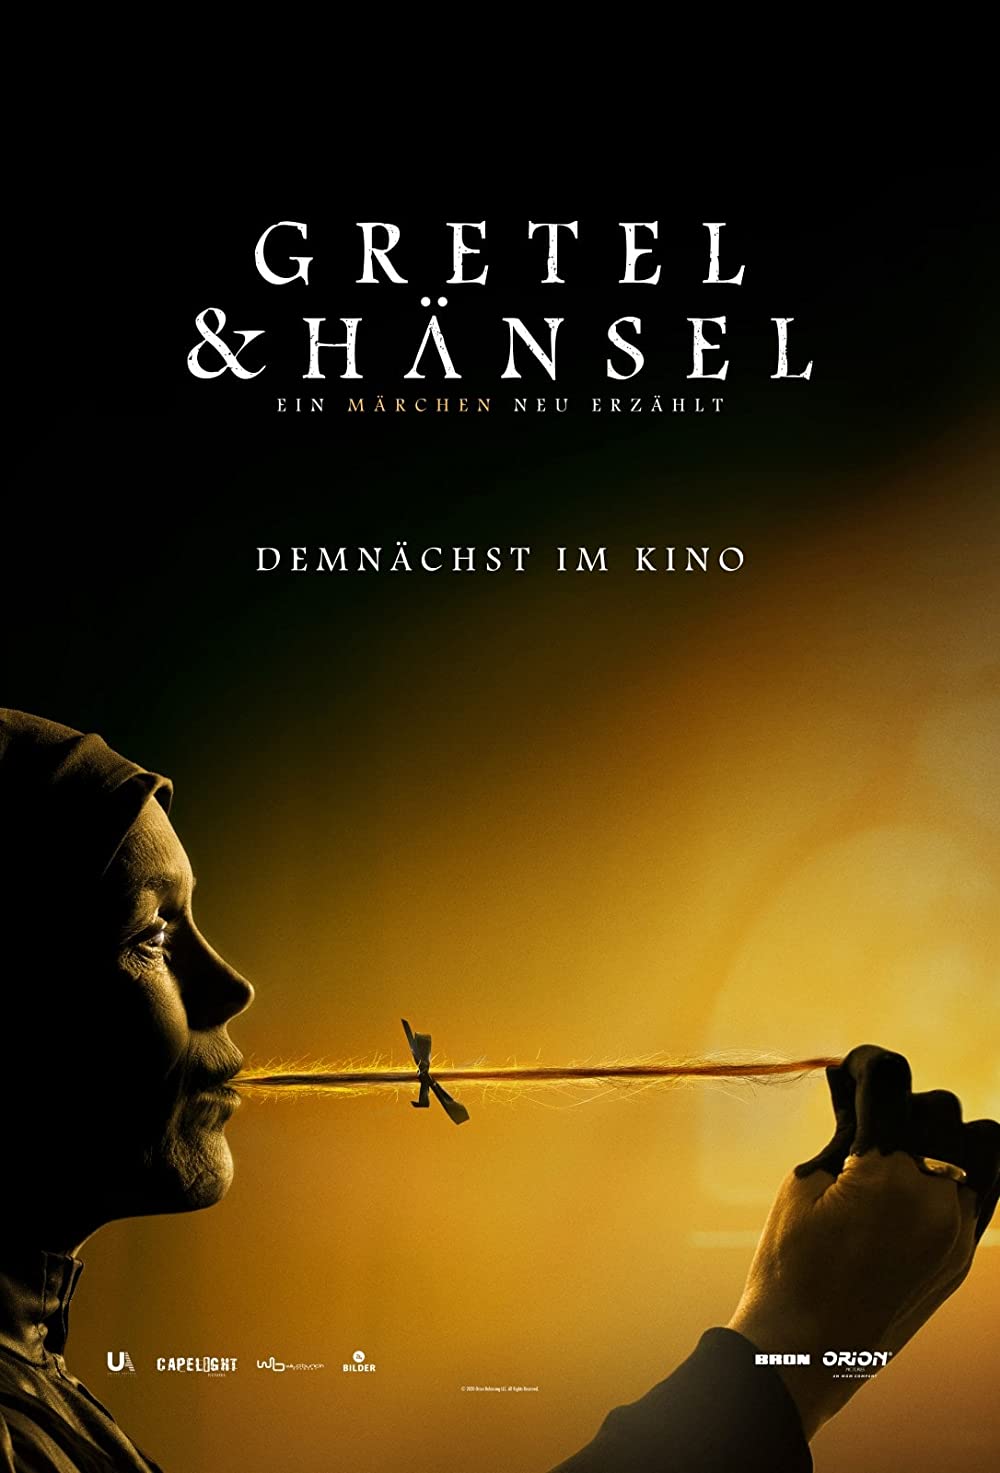 Filmbeschreibung zu Gretel & Hänsel